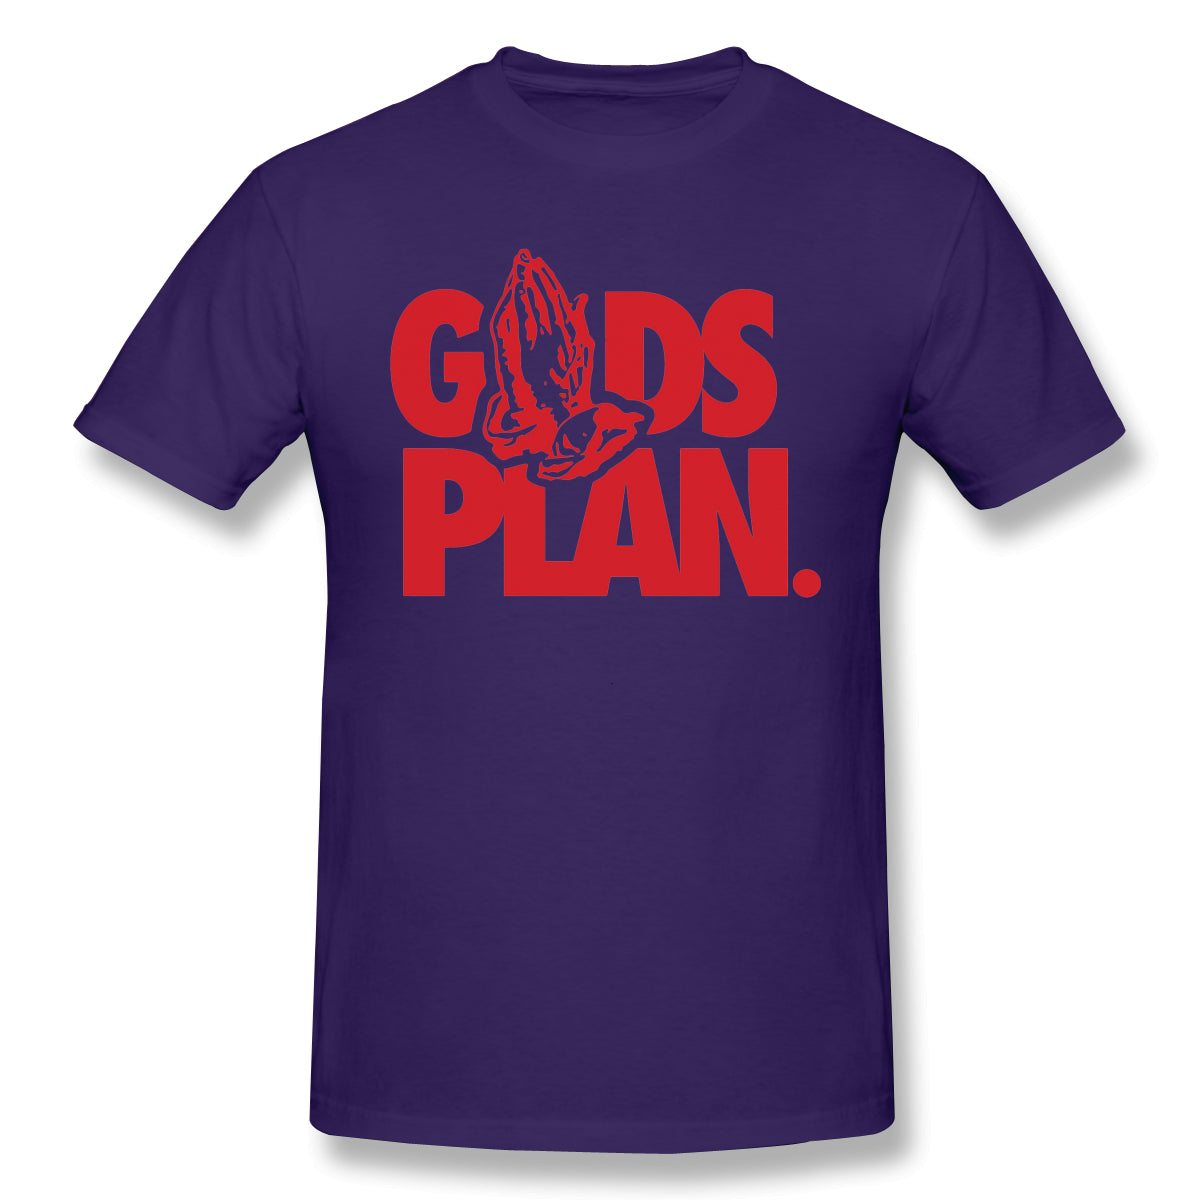 Air Jordan 1 Court Purple 1s Sneaker Tee Goods Plan Shirt For Man